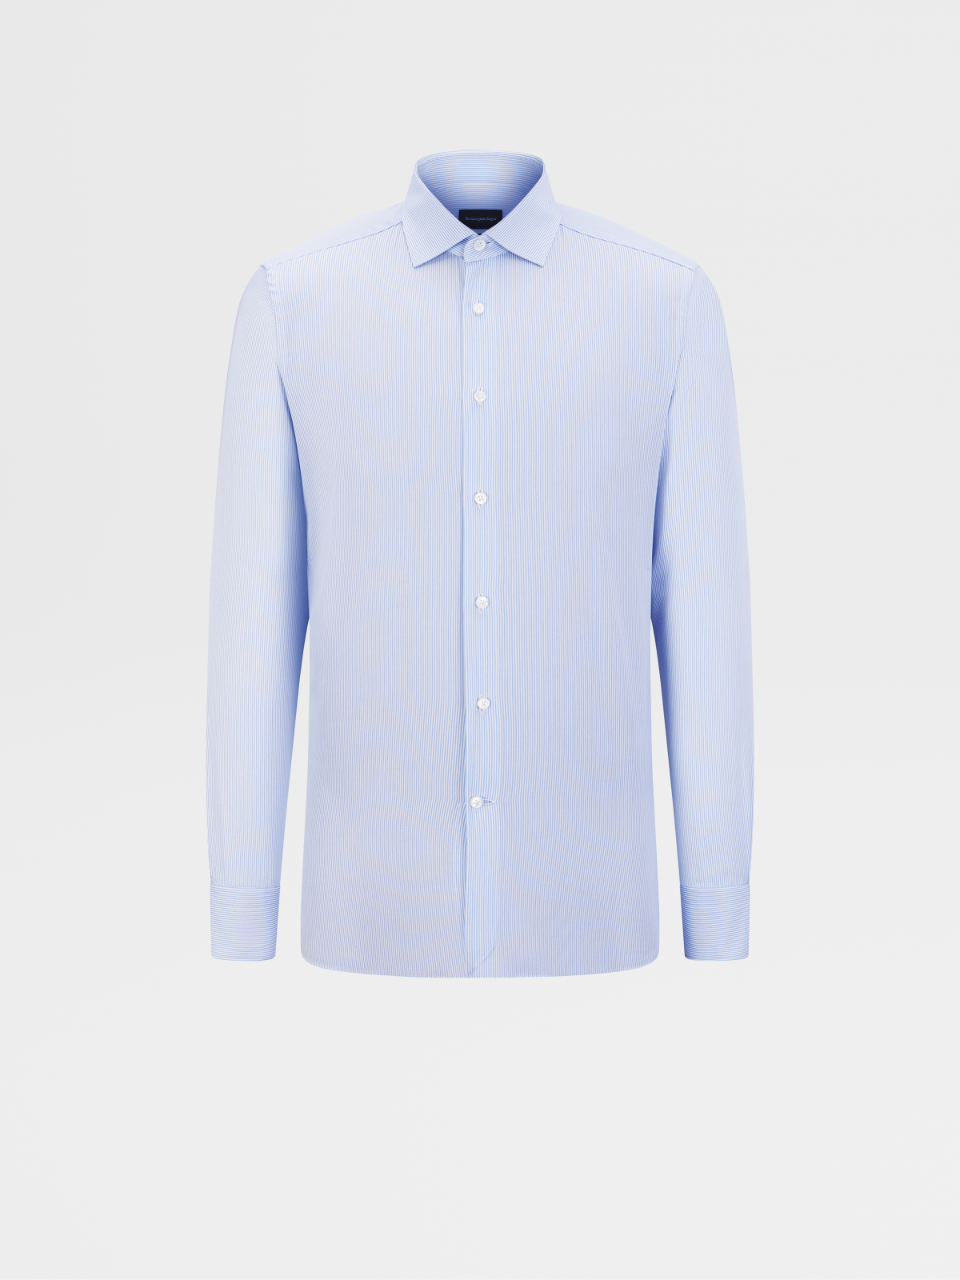 浅蓝色条纹 Trofeo™ 600 精裁衬衫，Milano 合身版型